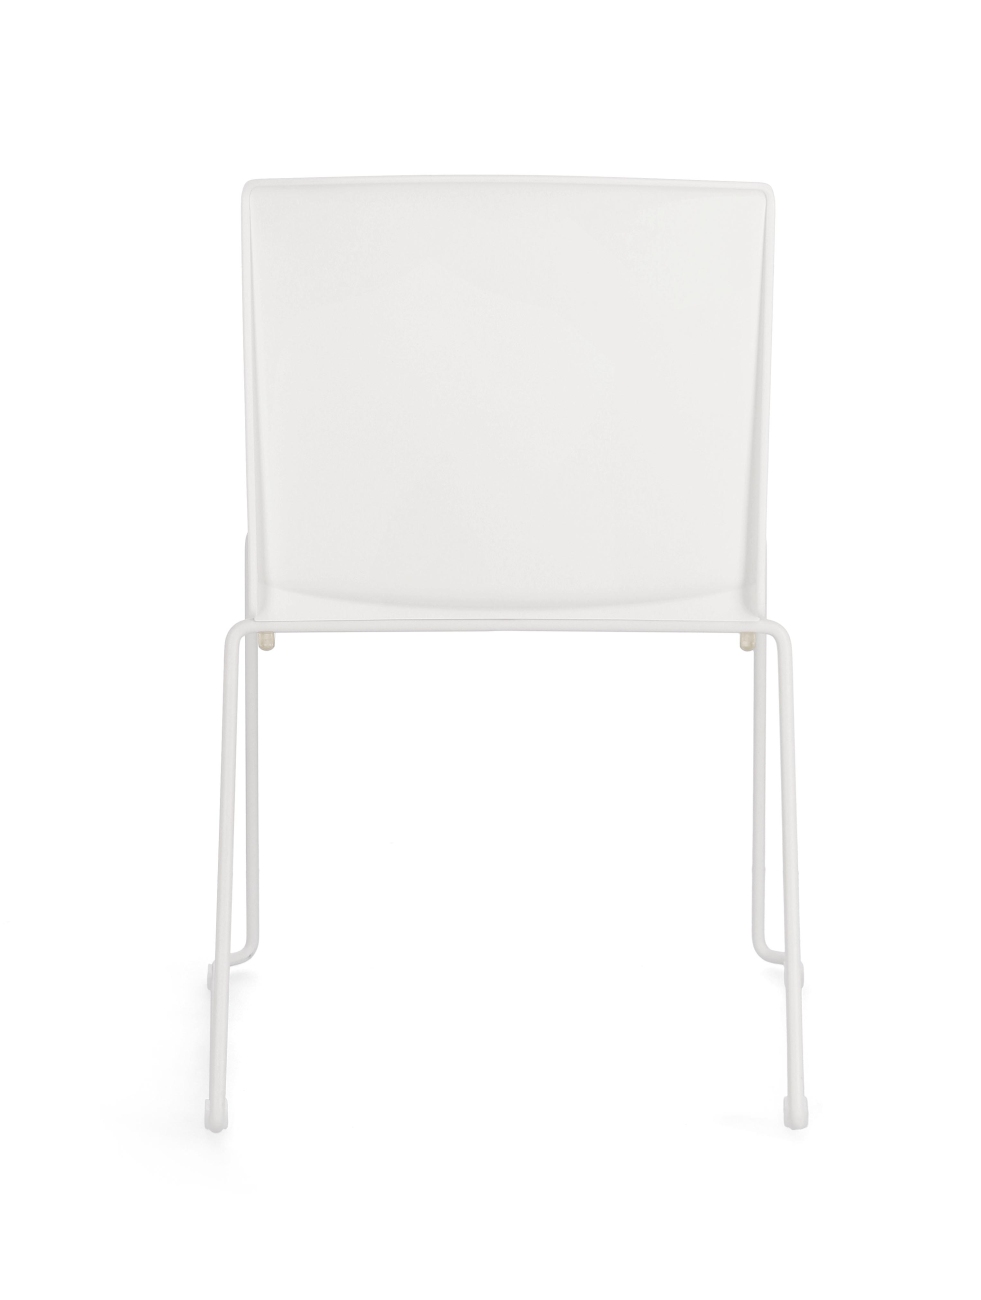 Der Esszimmerstuhl Giulia überzeugt mit seinem modernen Stil. Gefertigt wurde er aus Kunststoff, welches einen weißen Farbton besitzt. Das Gestell ist aus Metall und hat eine weiße Farbe. Der Stuhl besitzt eine Sitzhöhe von 46 cm.